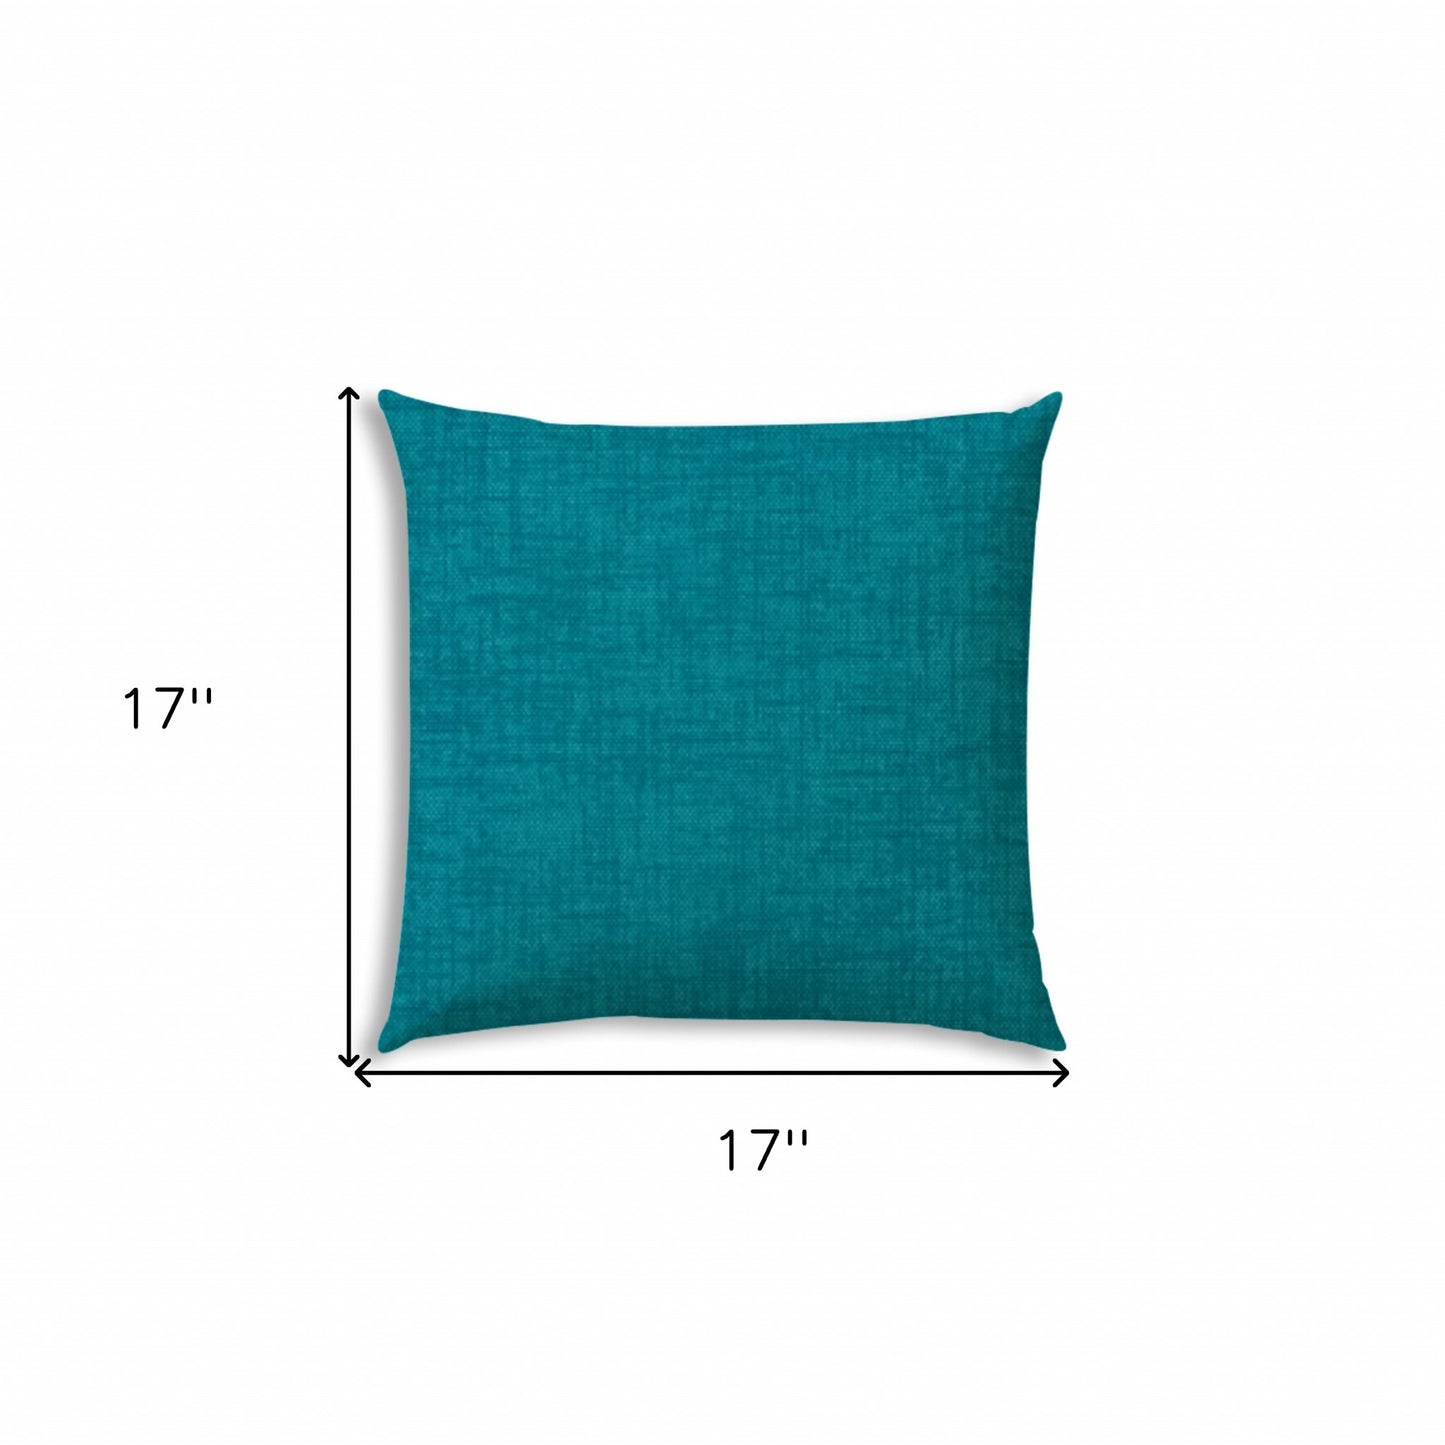 17" Teal Blue Indoor Outdoor Throw Pillow